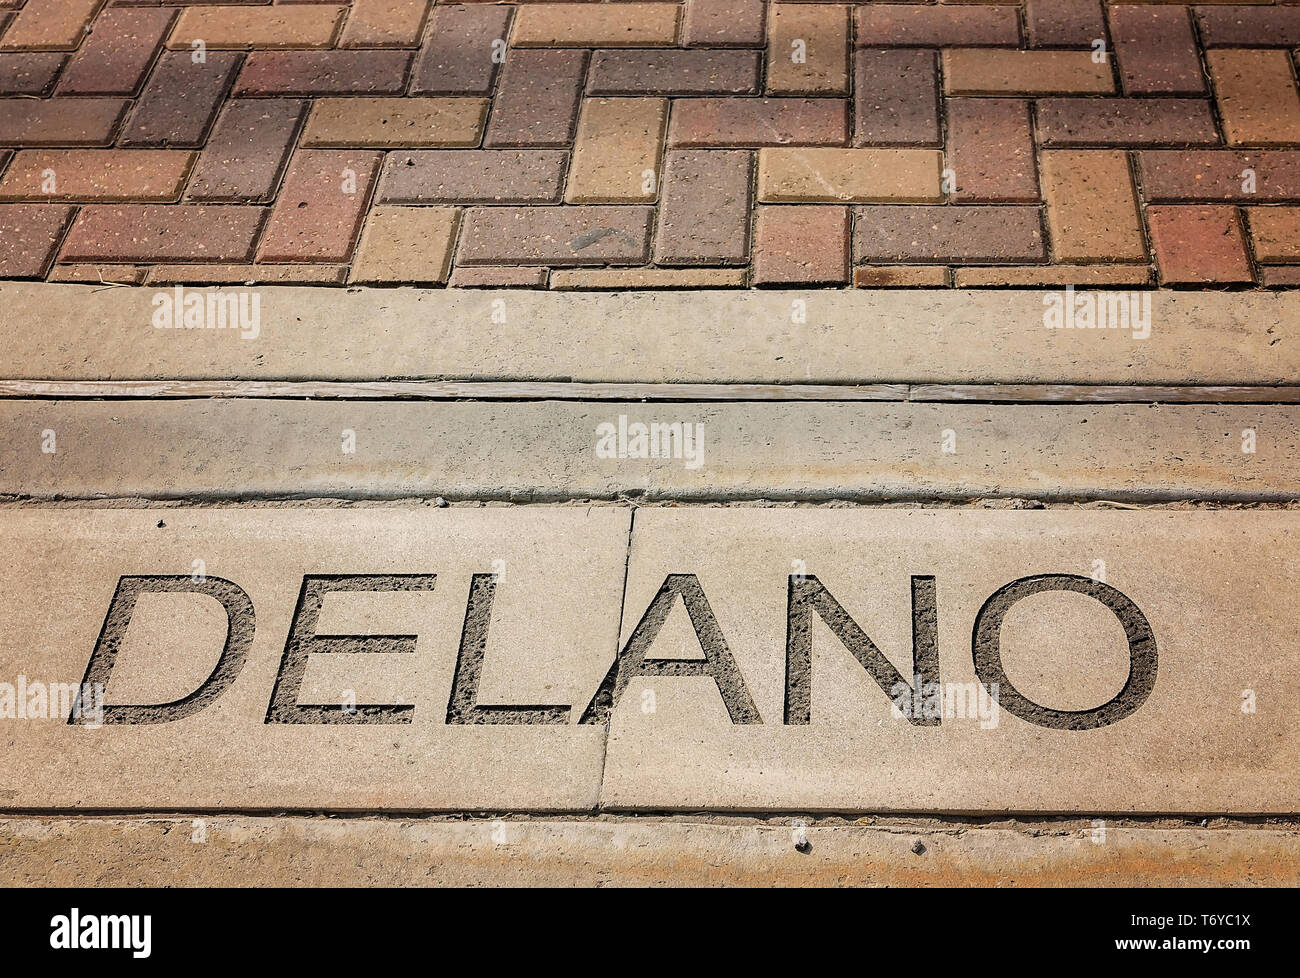 Delano Street del nome è incorporato nel marciapiede, Sett. 4, 2017, Houston, Texas. Foto Stock